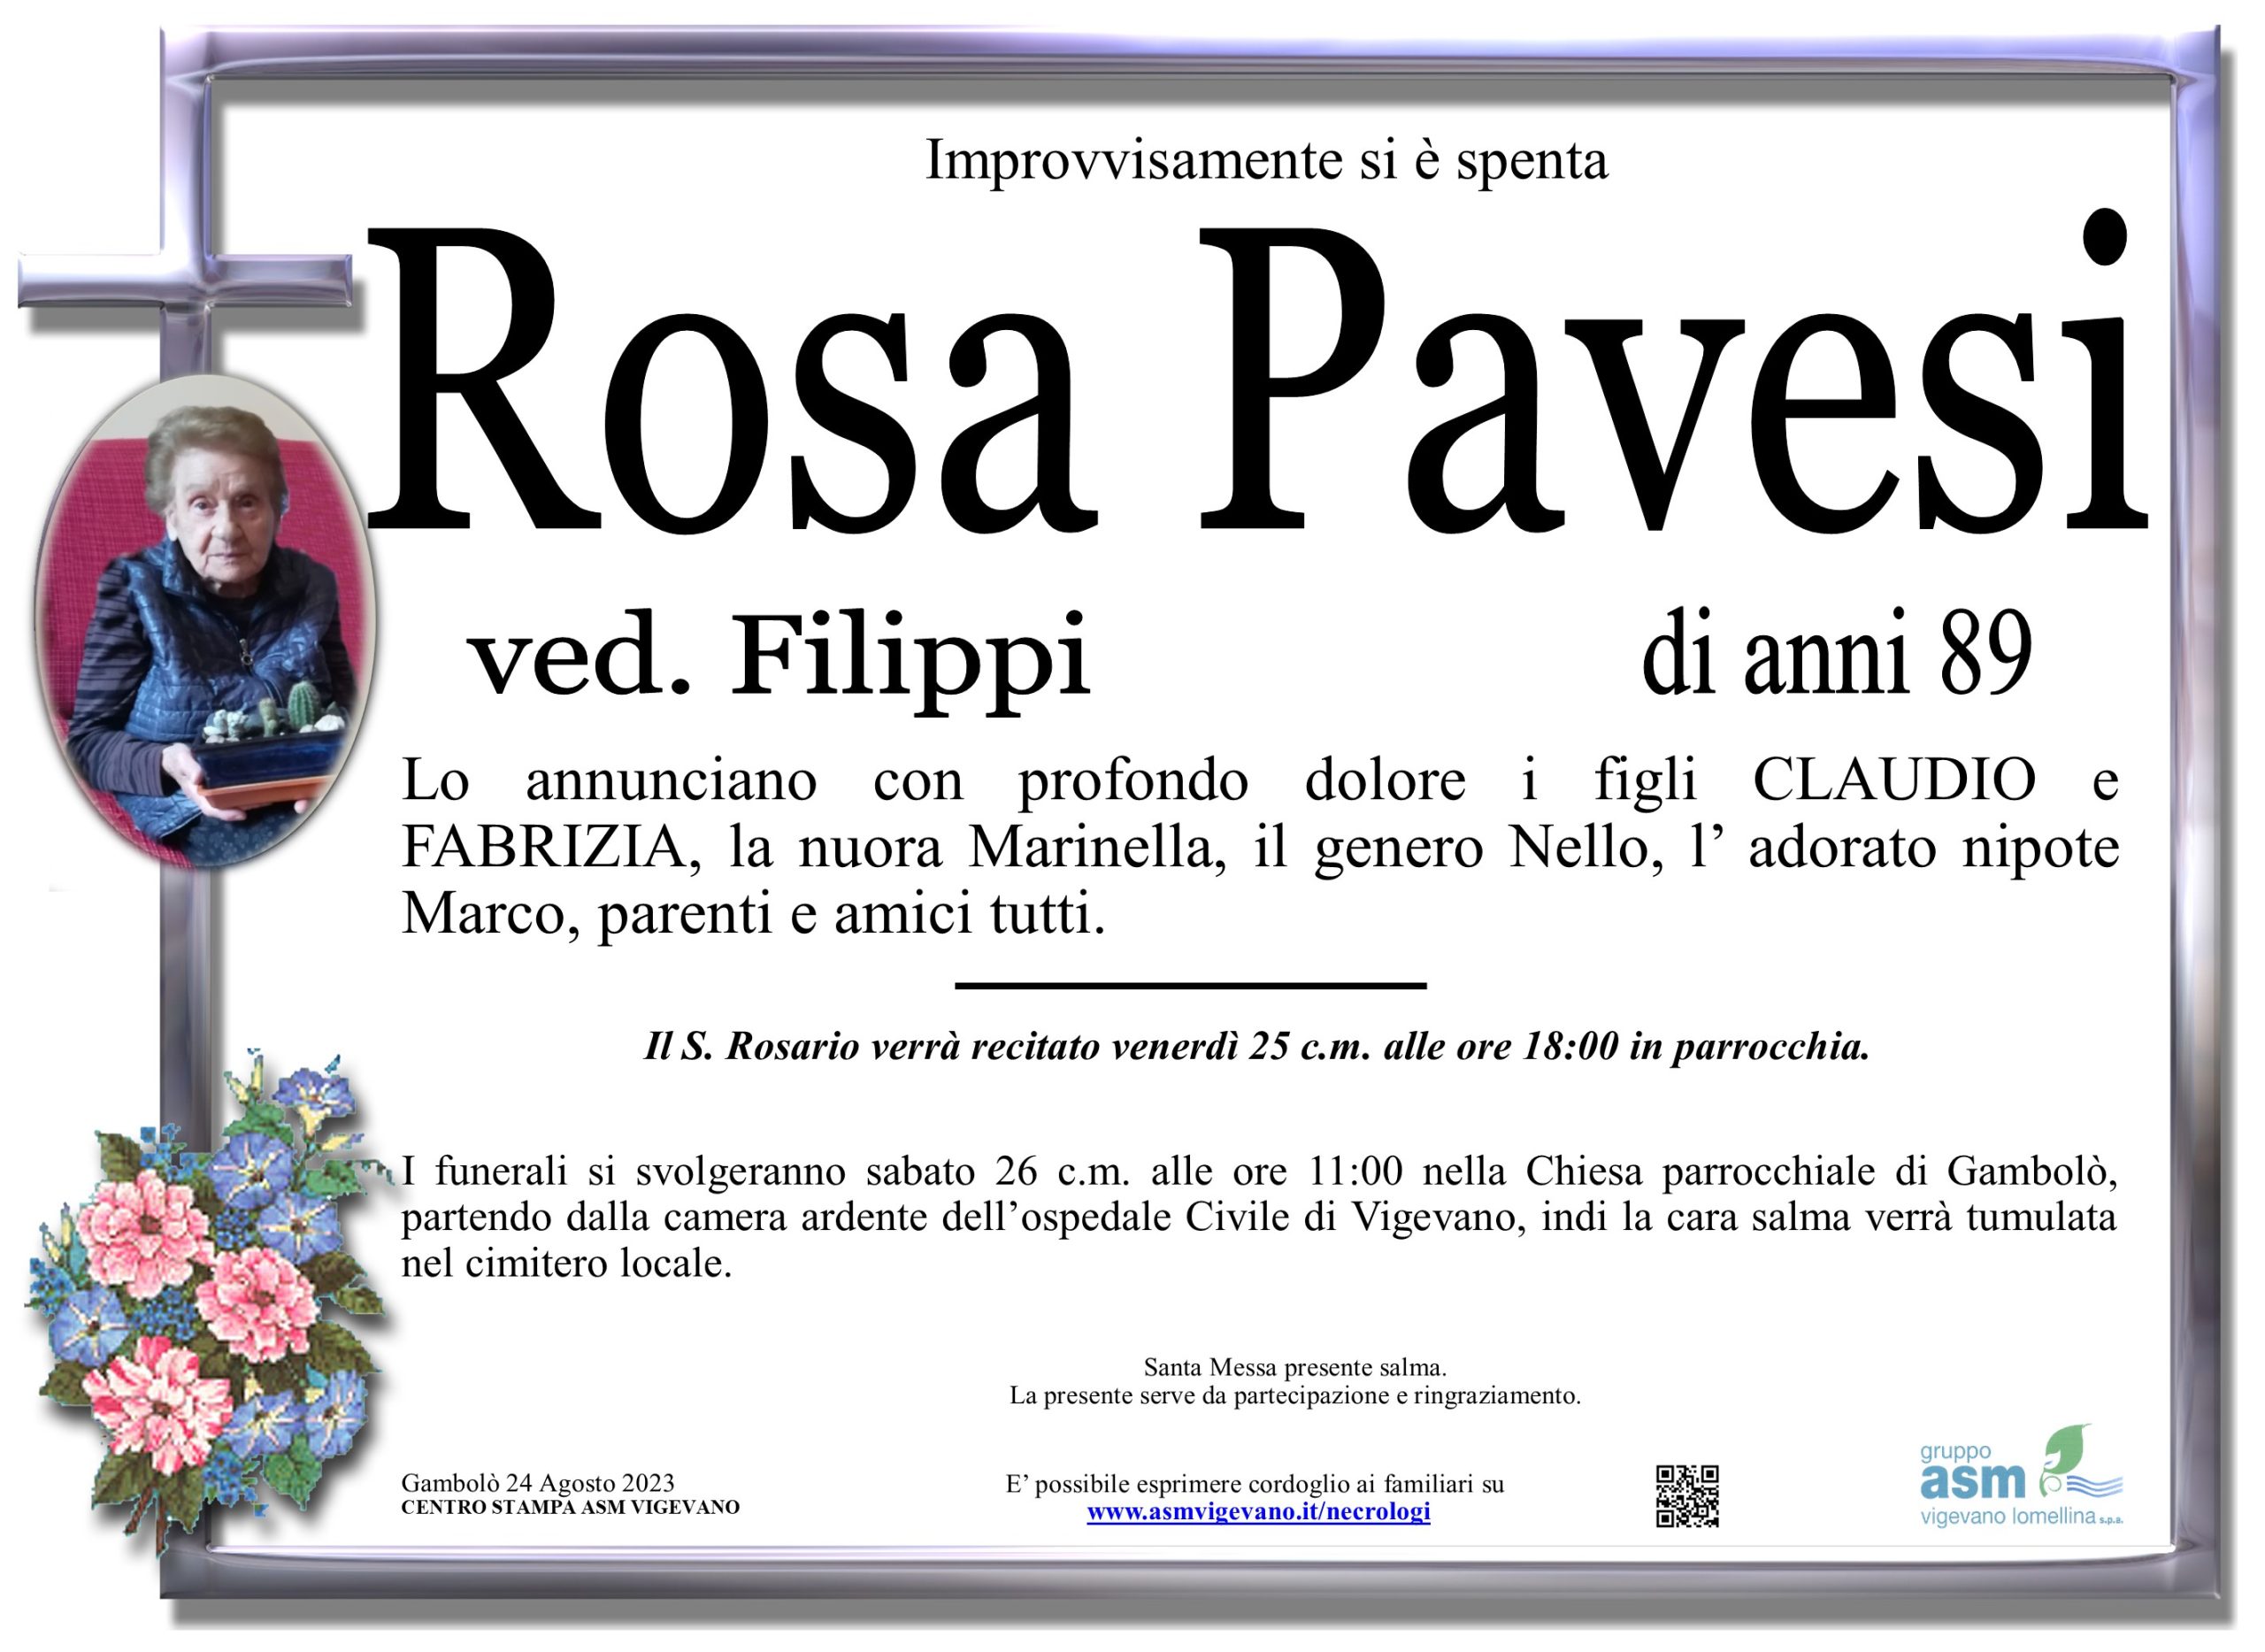 Rosa Pavesi